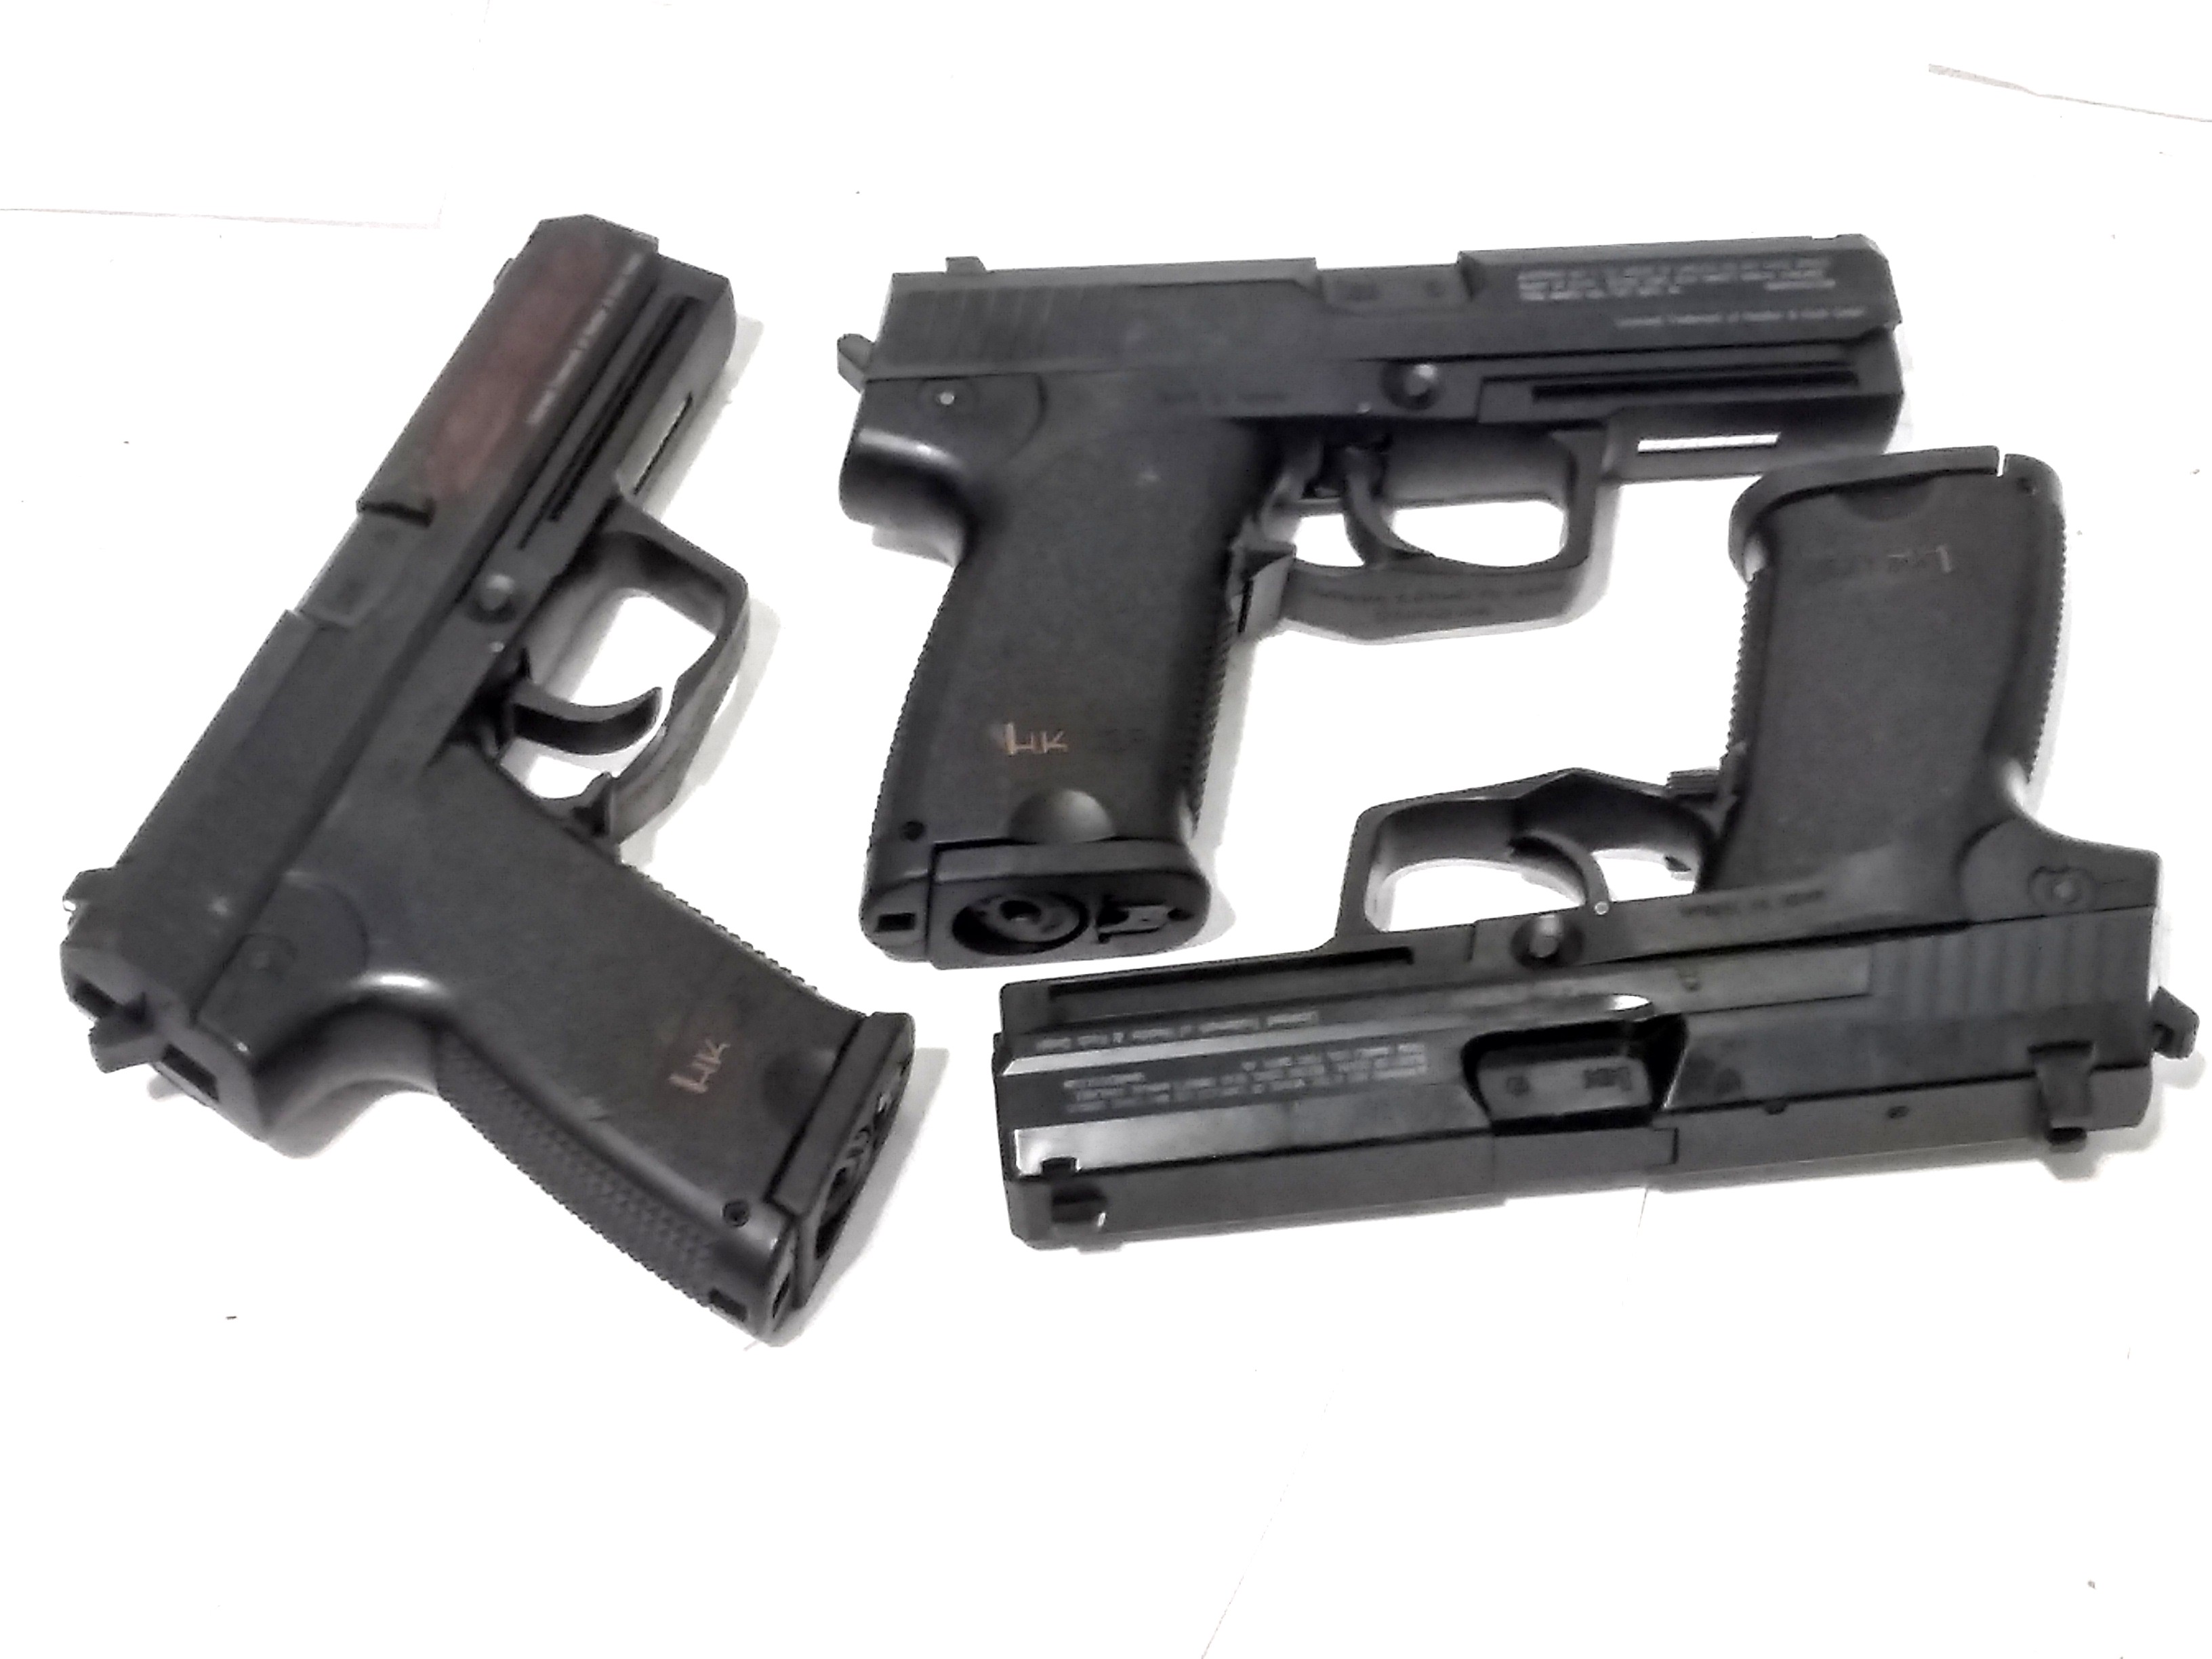 3 HK USP 4.5mm BB GUNS FOR REPAIR